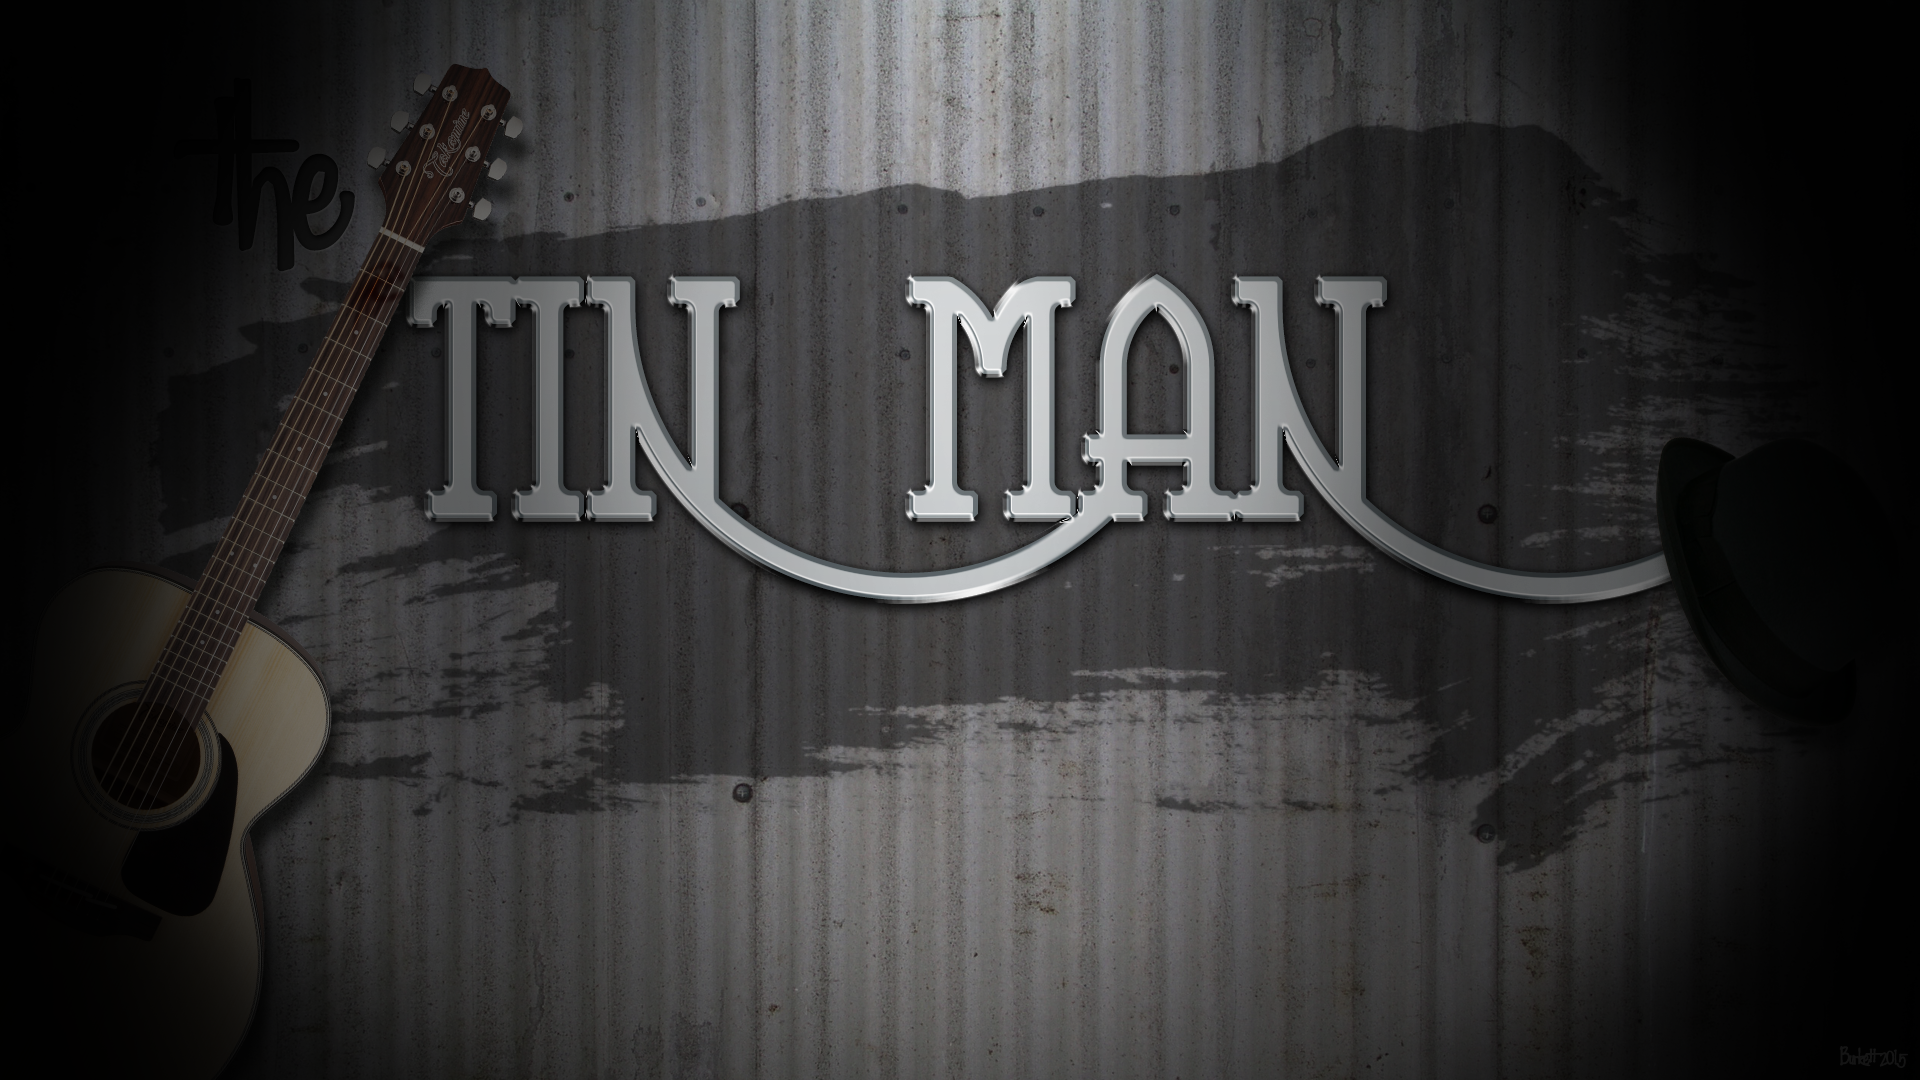 Tin Man Promotional Poster